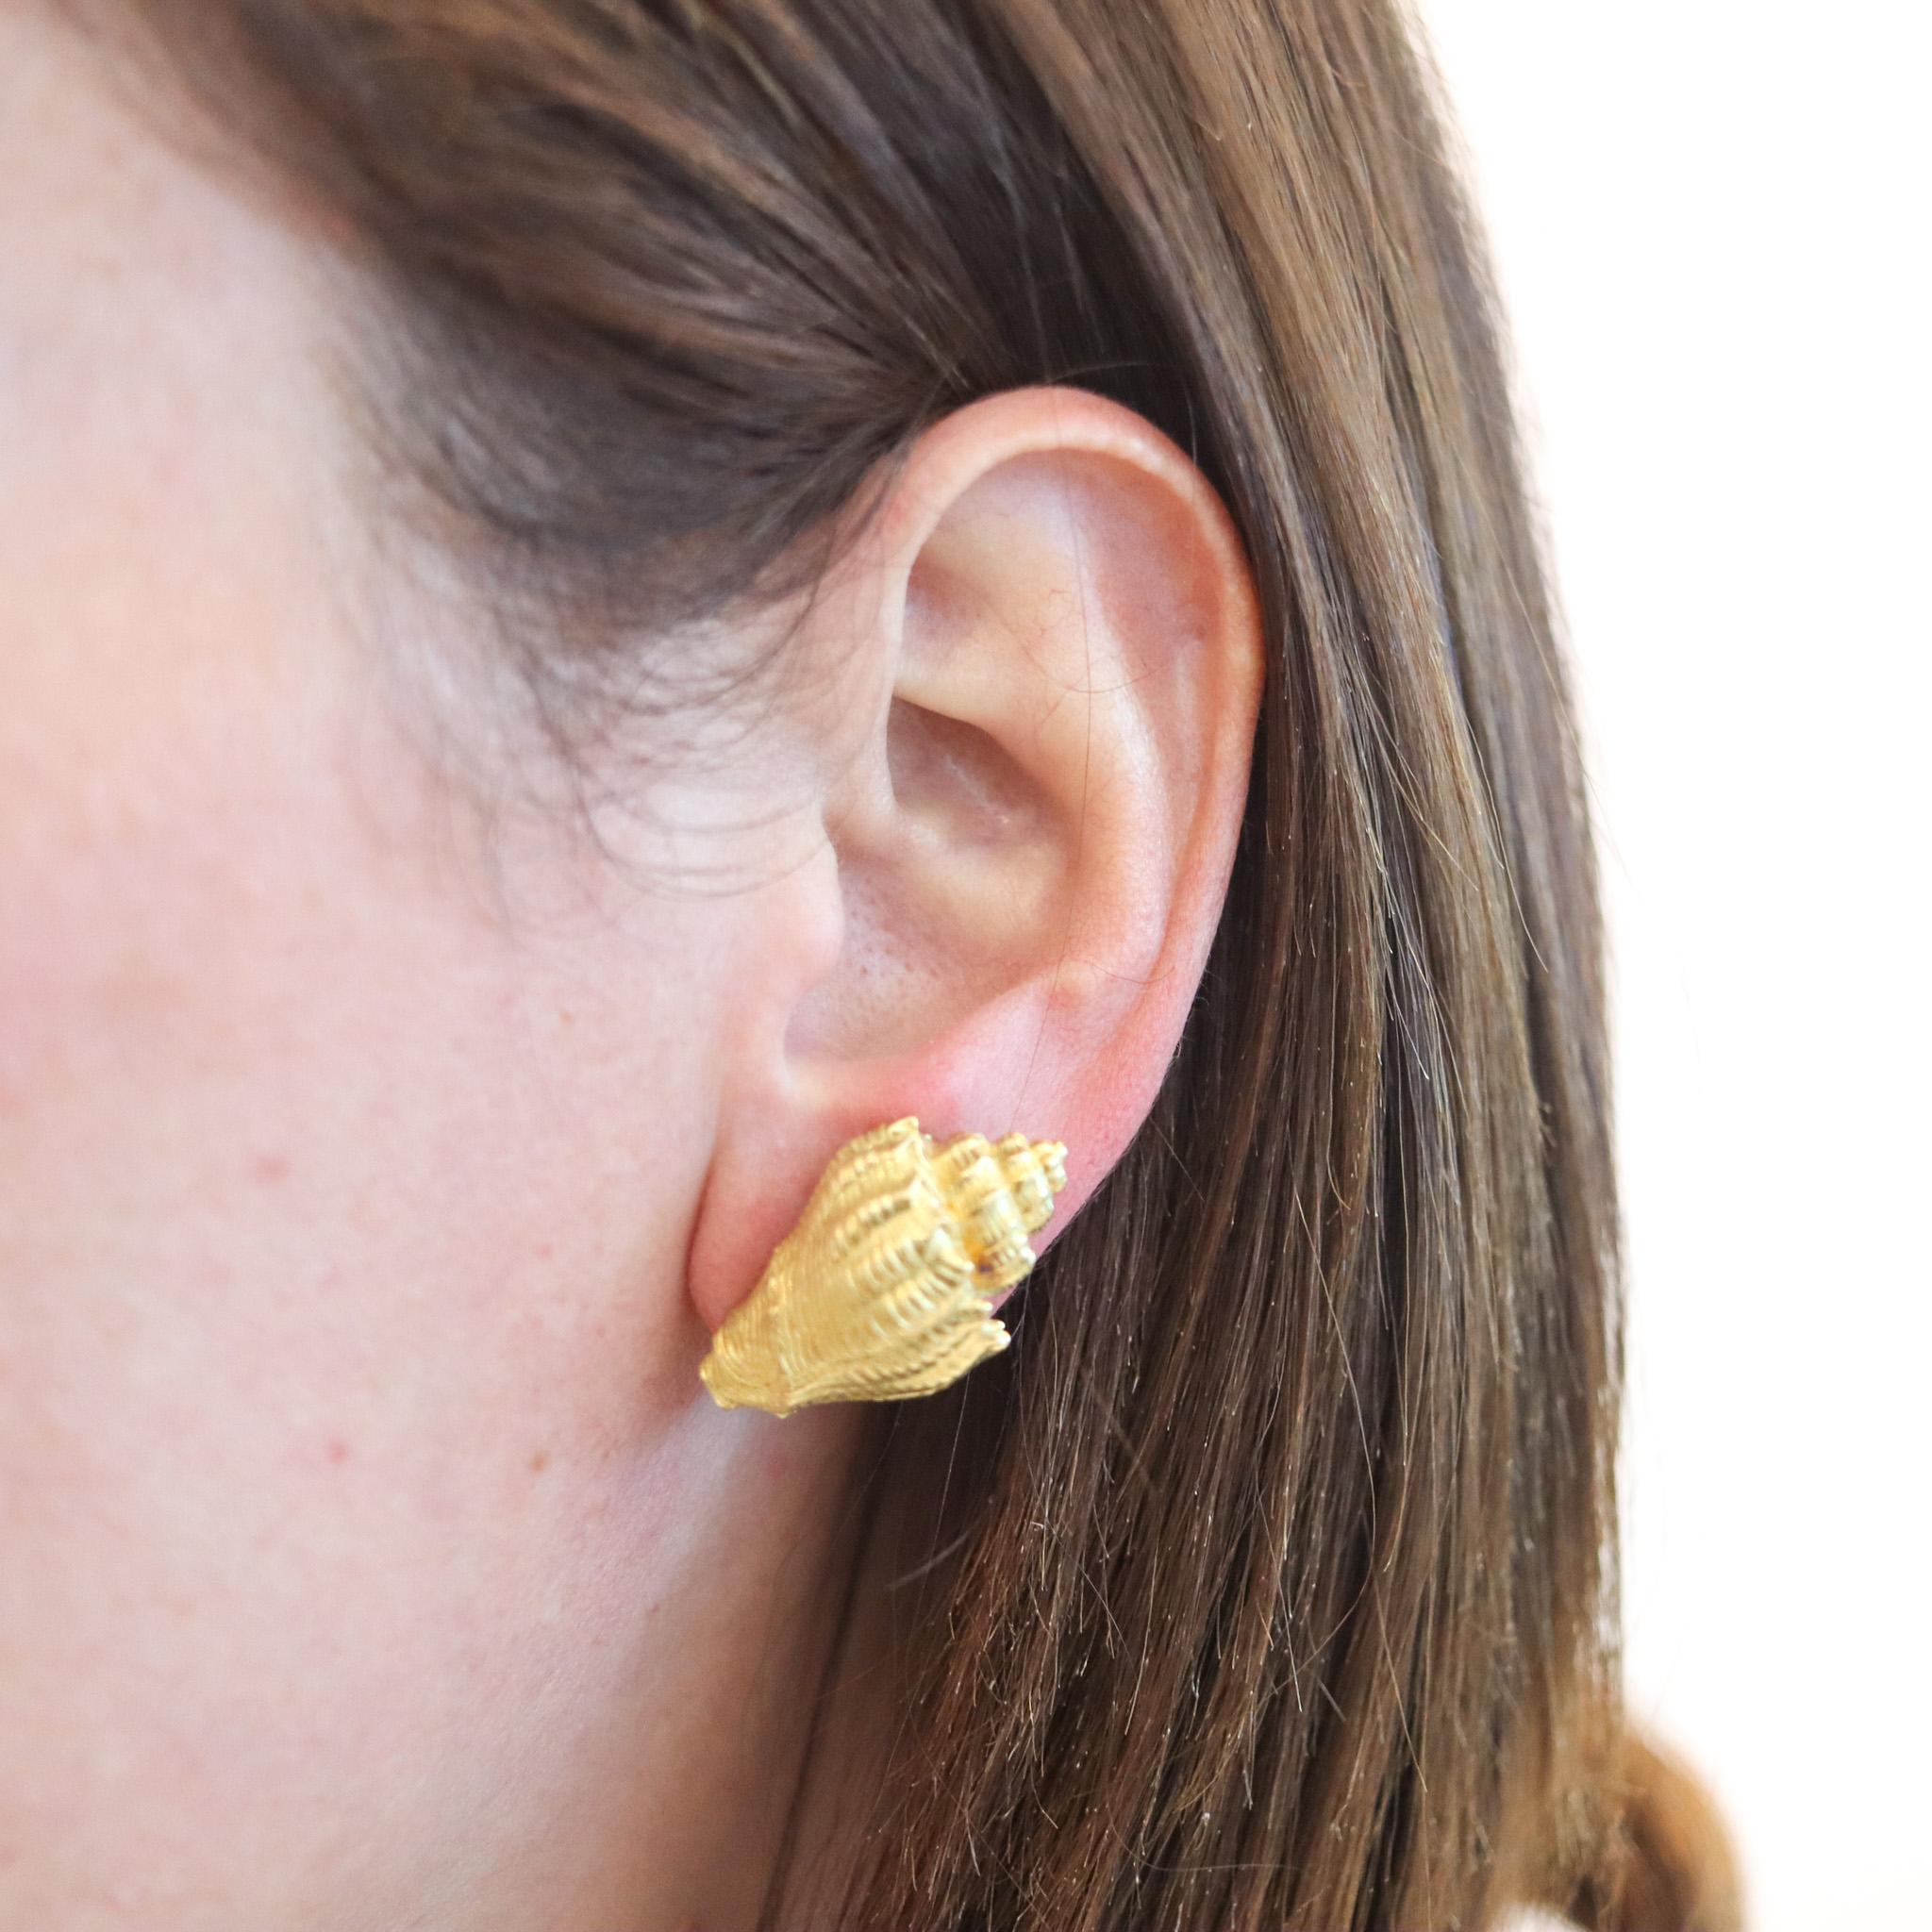 Boucles d'oreilles en forme de coquillages conçues par Tiffany & Co.

Une belle paire de boucles d'oreilles à clips créée à New York chez Tiffany & Co. par George Schuler, dans les années 1970. Ces boucles d'oreilles ont été réalisées en forme de